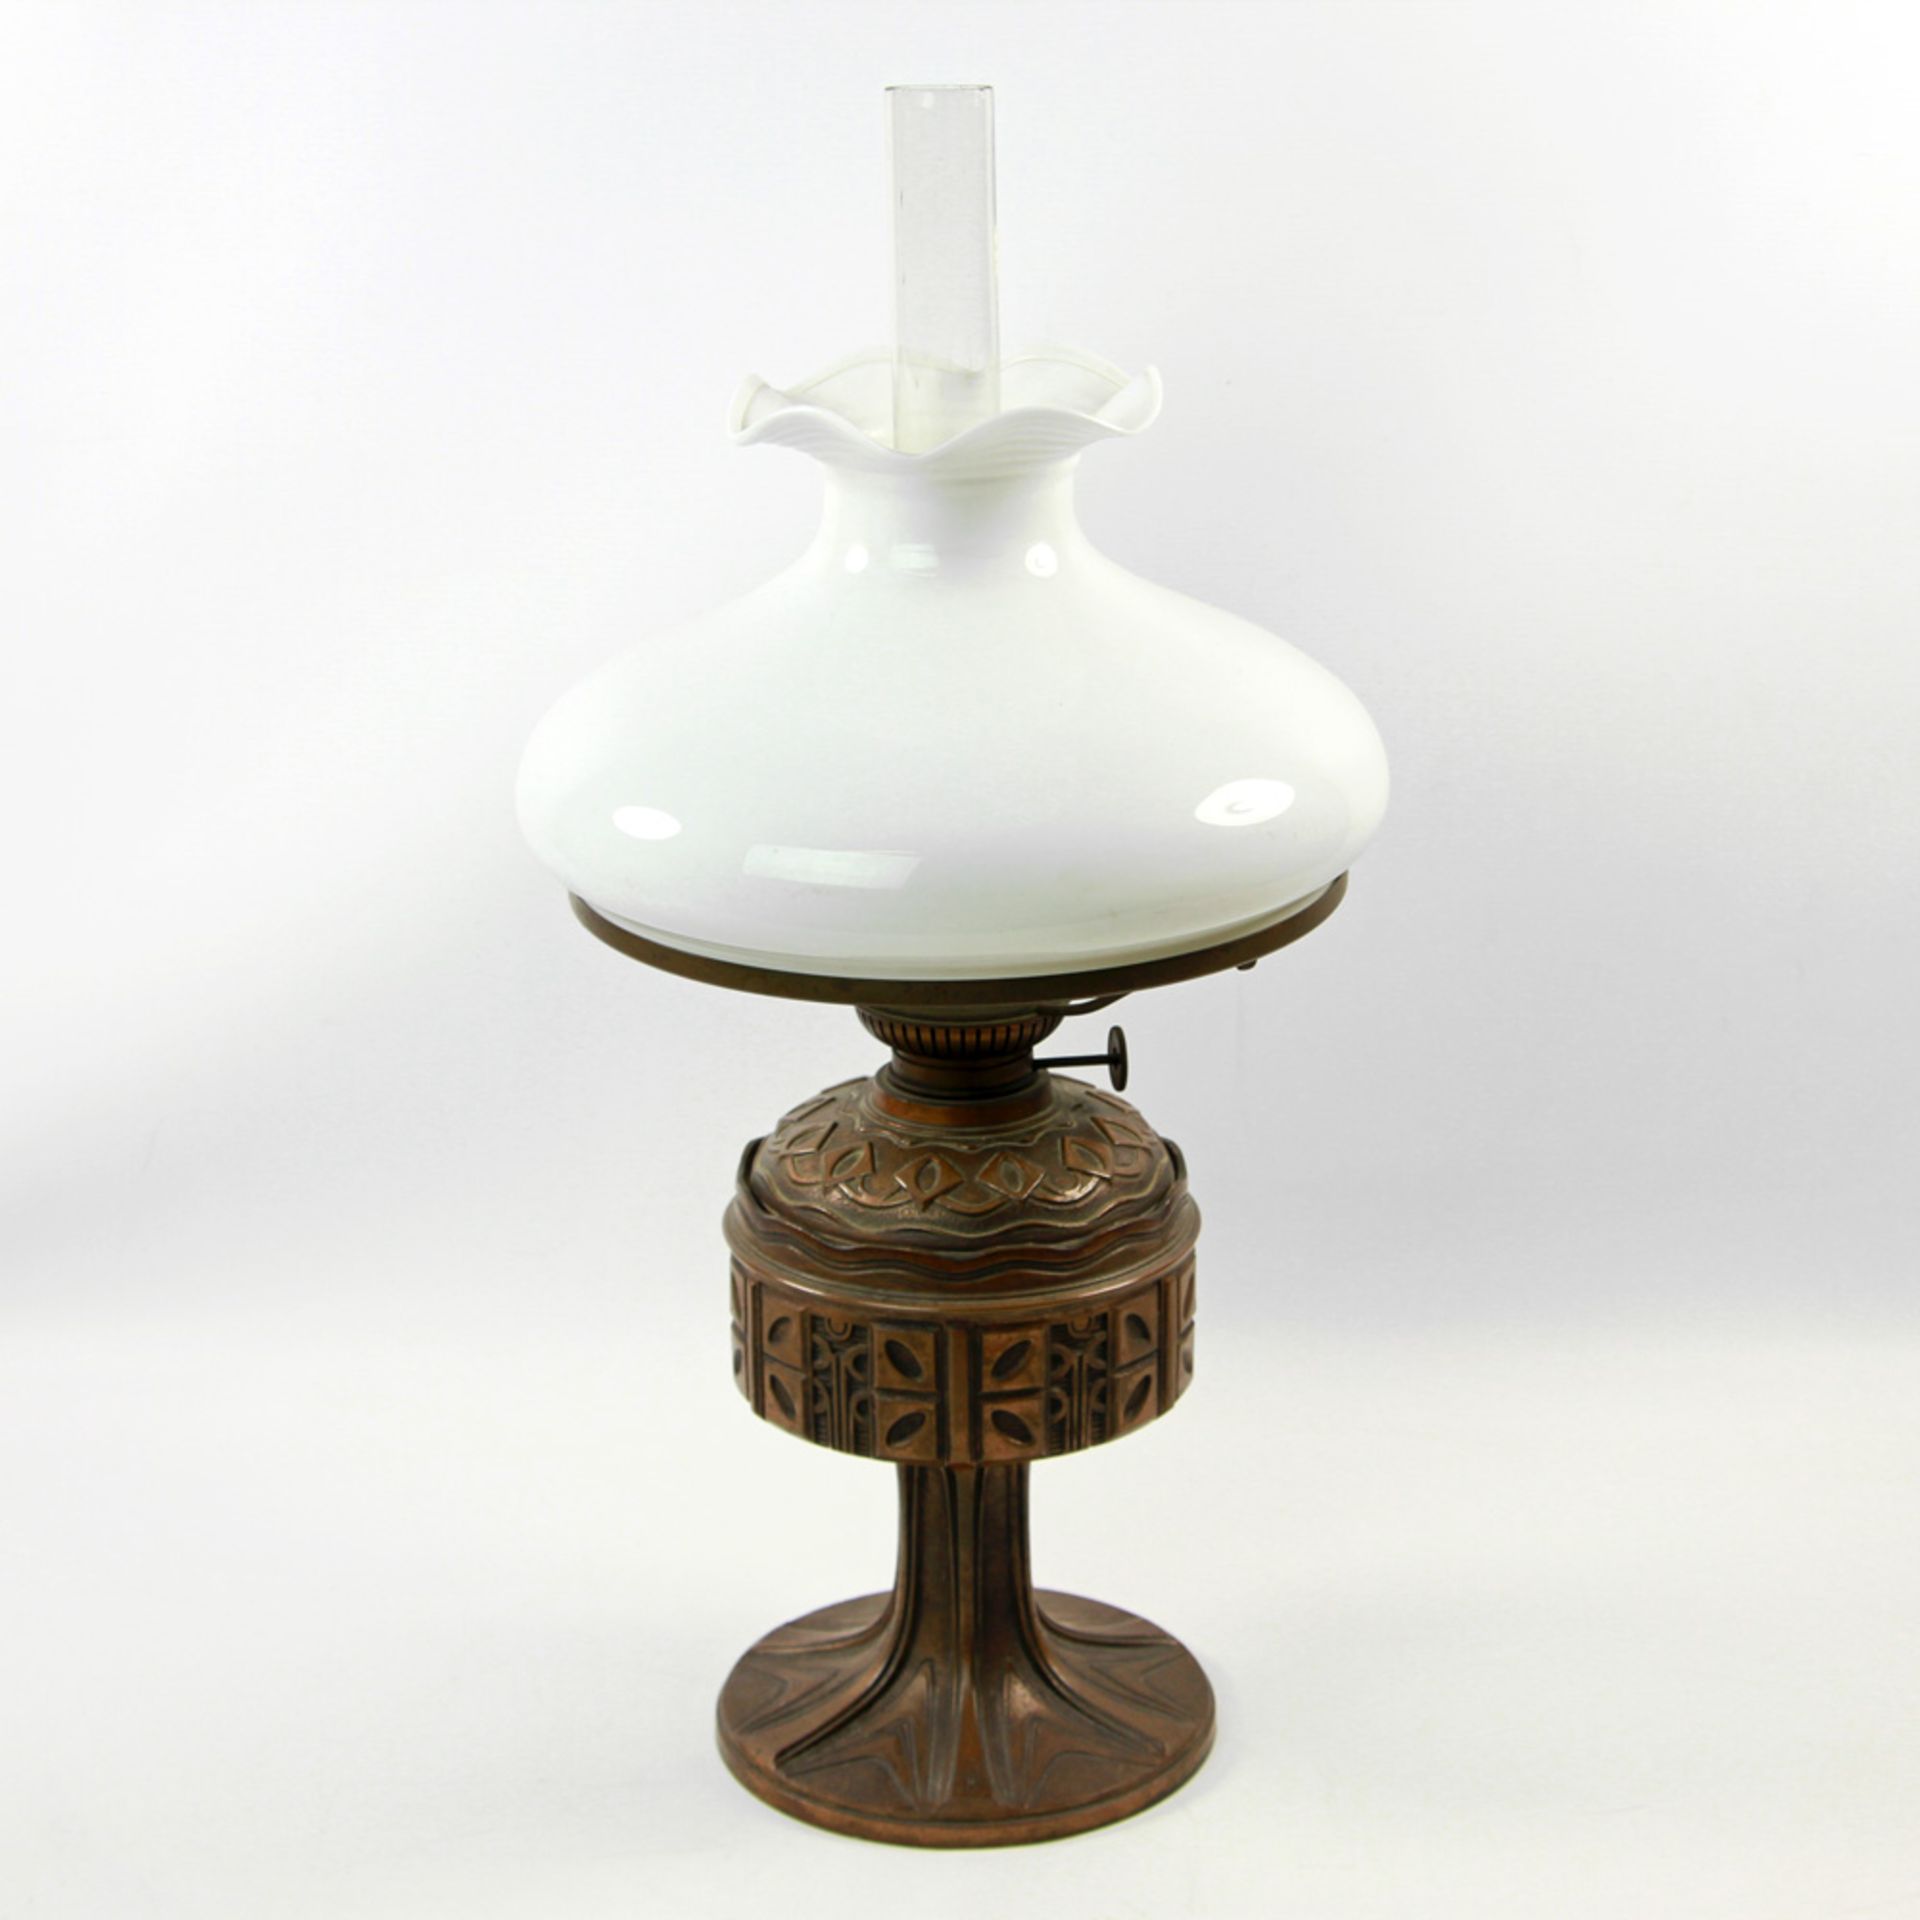 Petroleumlampe, 20.Jh., Metallfuß, Glasaufsatz, reicher Ornamentdekor, min. besch., H. ca. 53